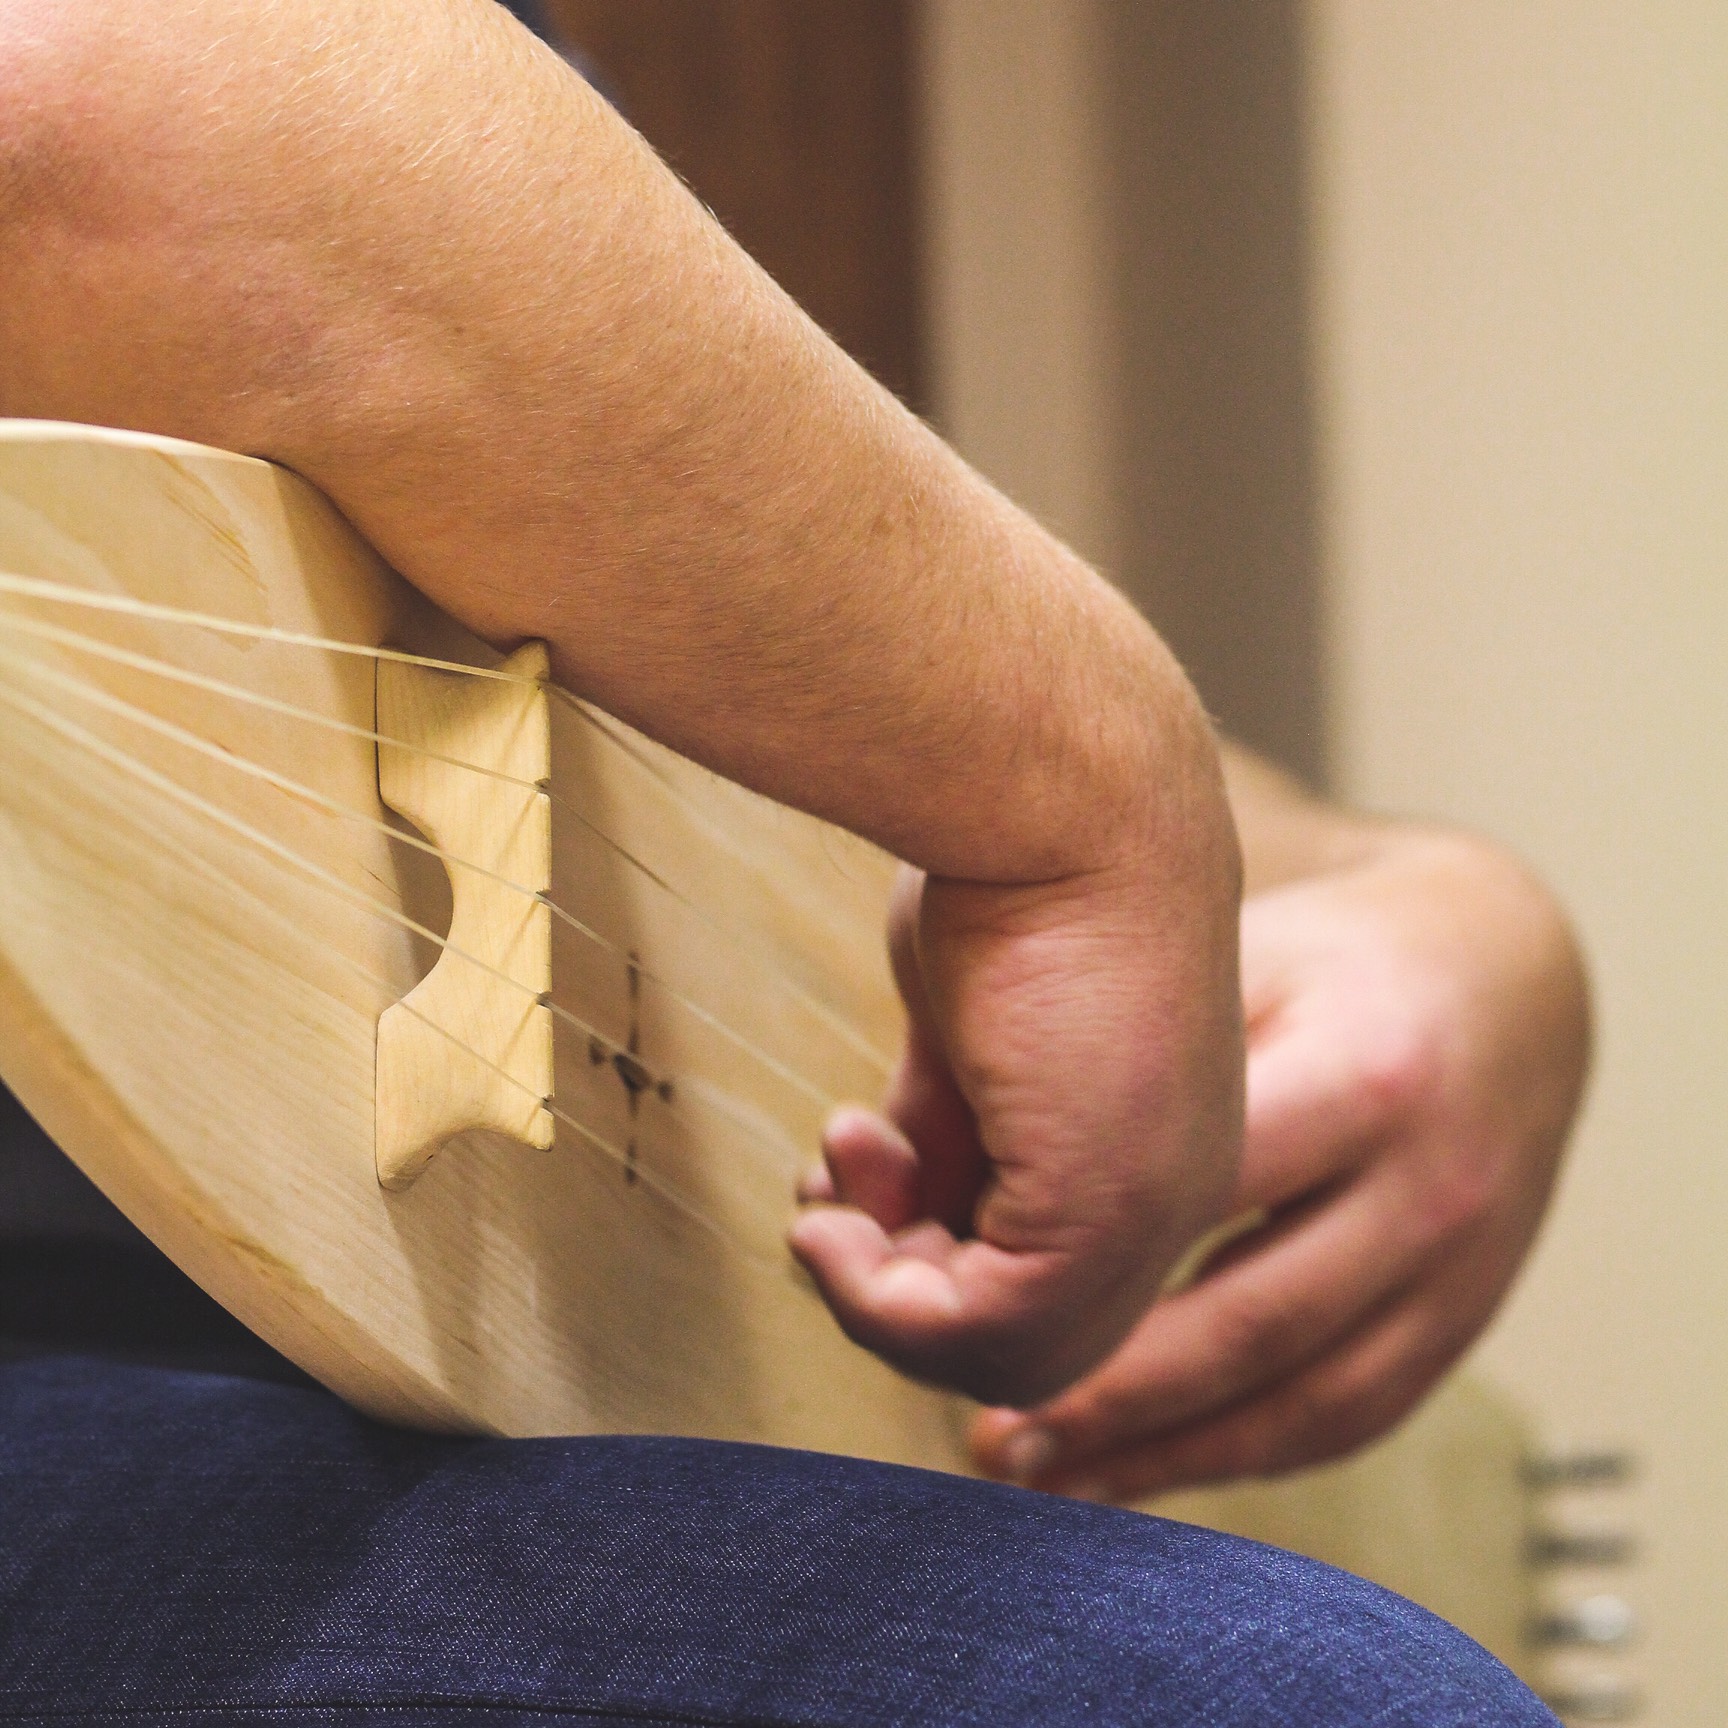 Научим игре и изготовлению музыкальных инструментов обско-угорских народов